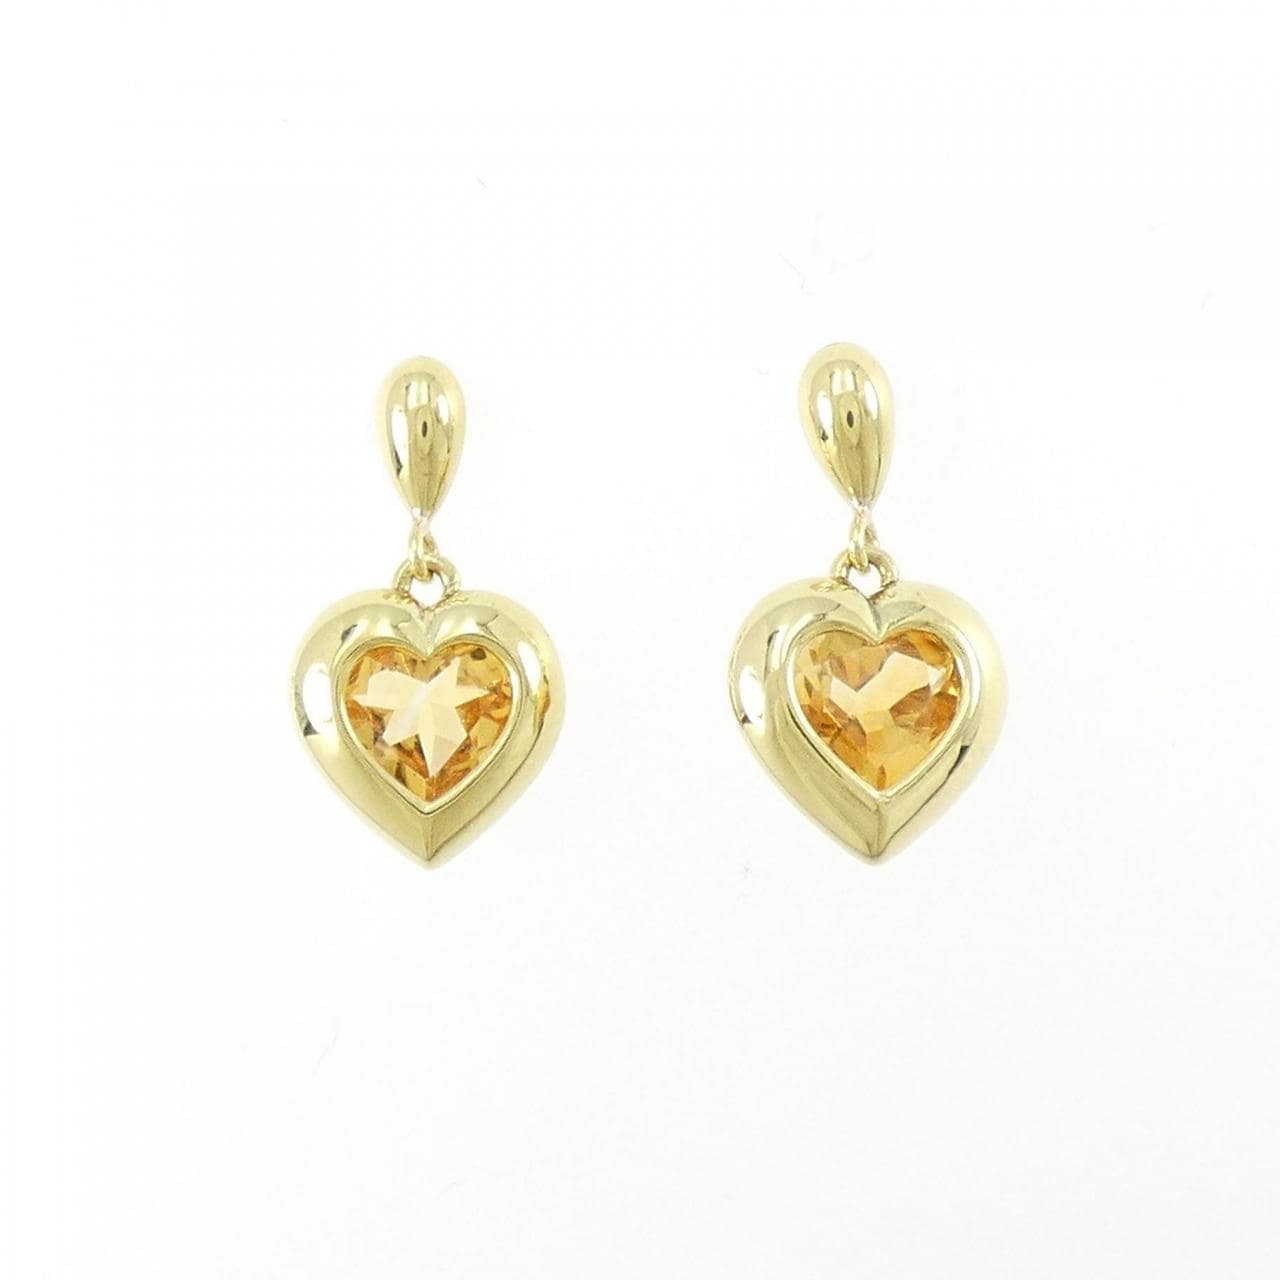 K18YG heart citrine earrings